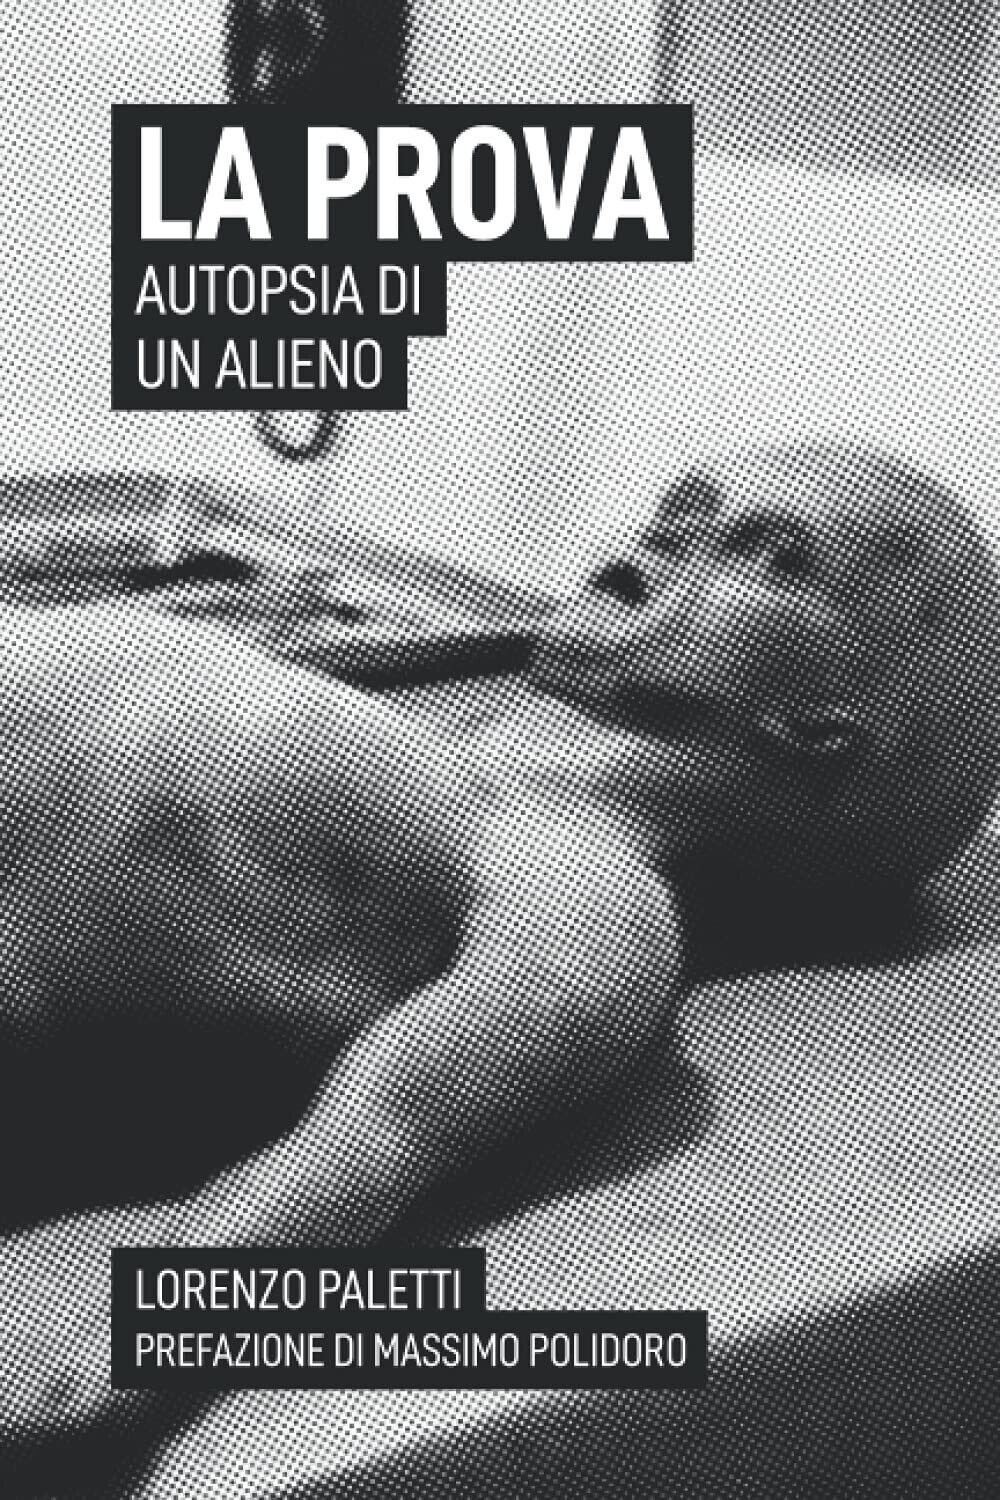 La Prova: Autopsia di un Alieno - Lorenzo Paletti - Independently published,2021